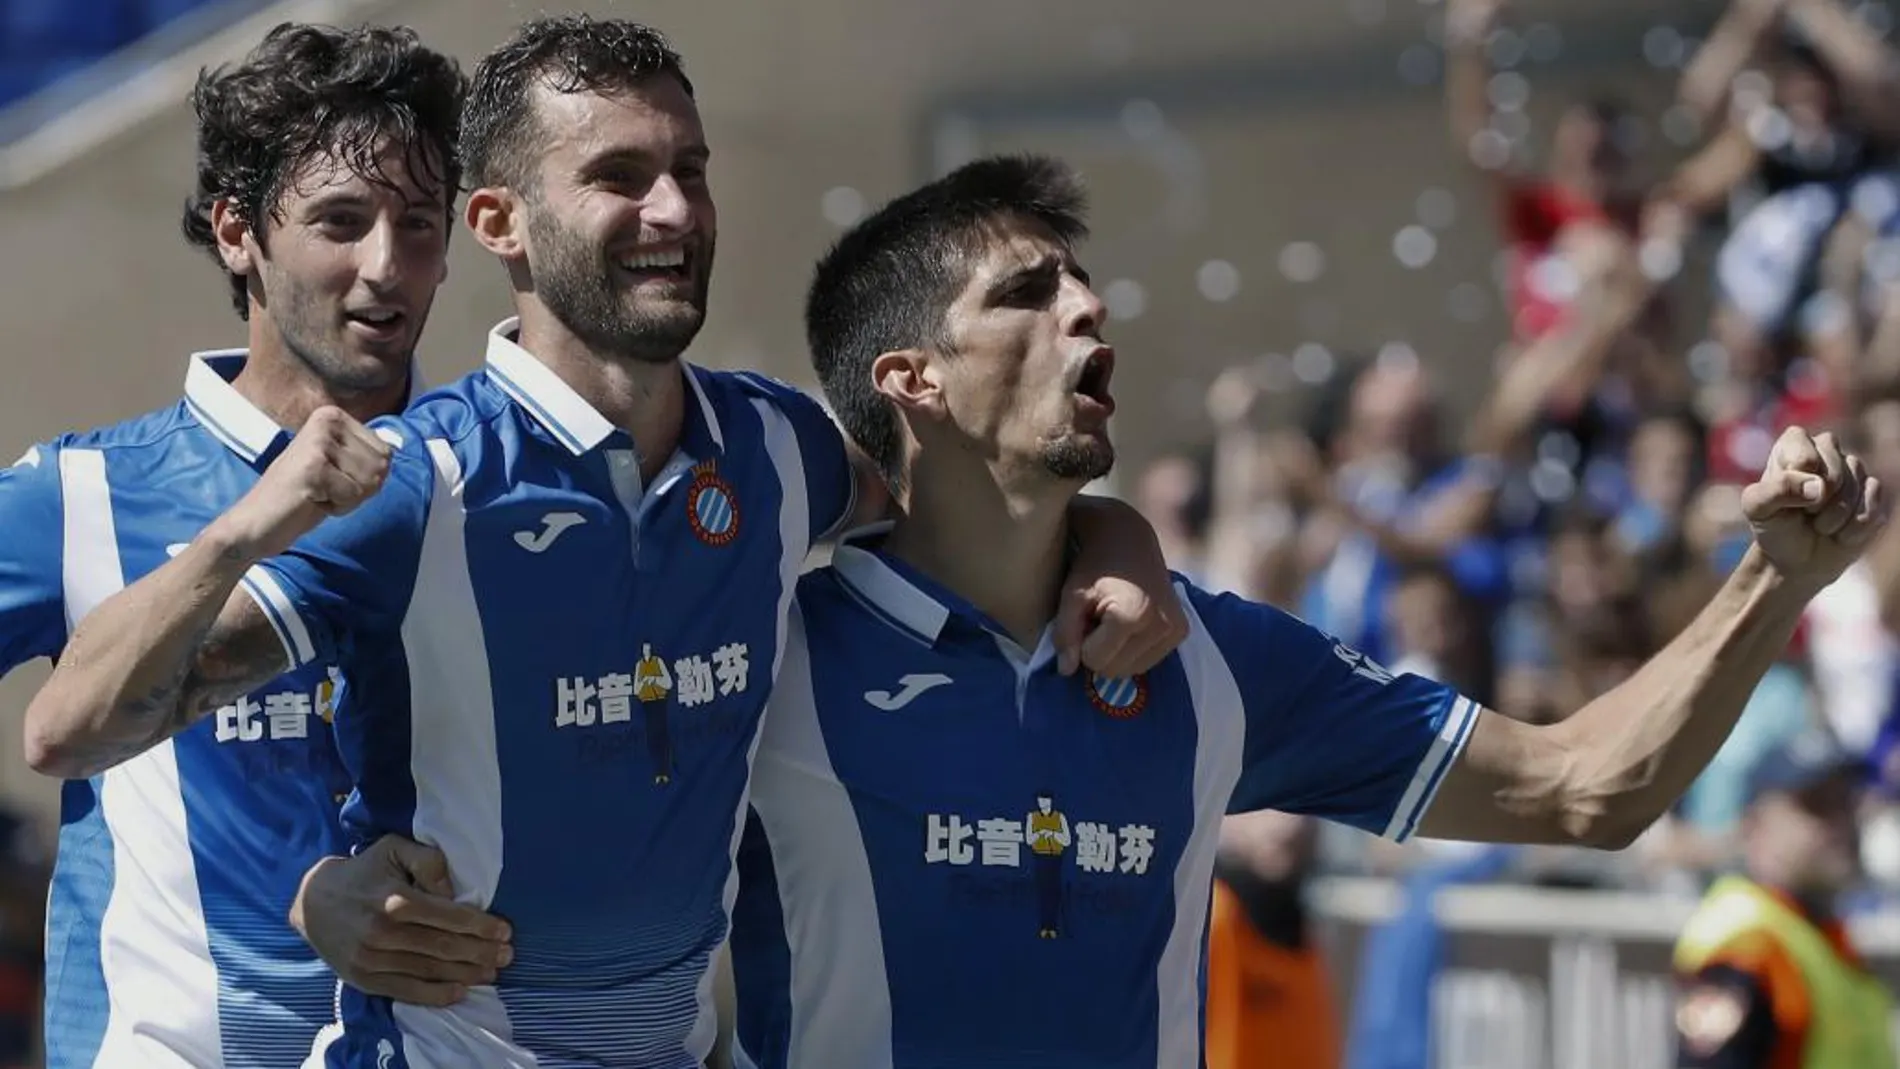 El delantero del Espanyol Gerard Moreno (d) celebra con sus compañeros Leo Baptistao (c) y Esteban Granero (i) su gol marcado ante el Deportivo de La Coruña